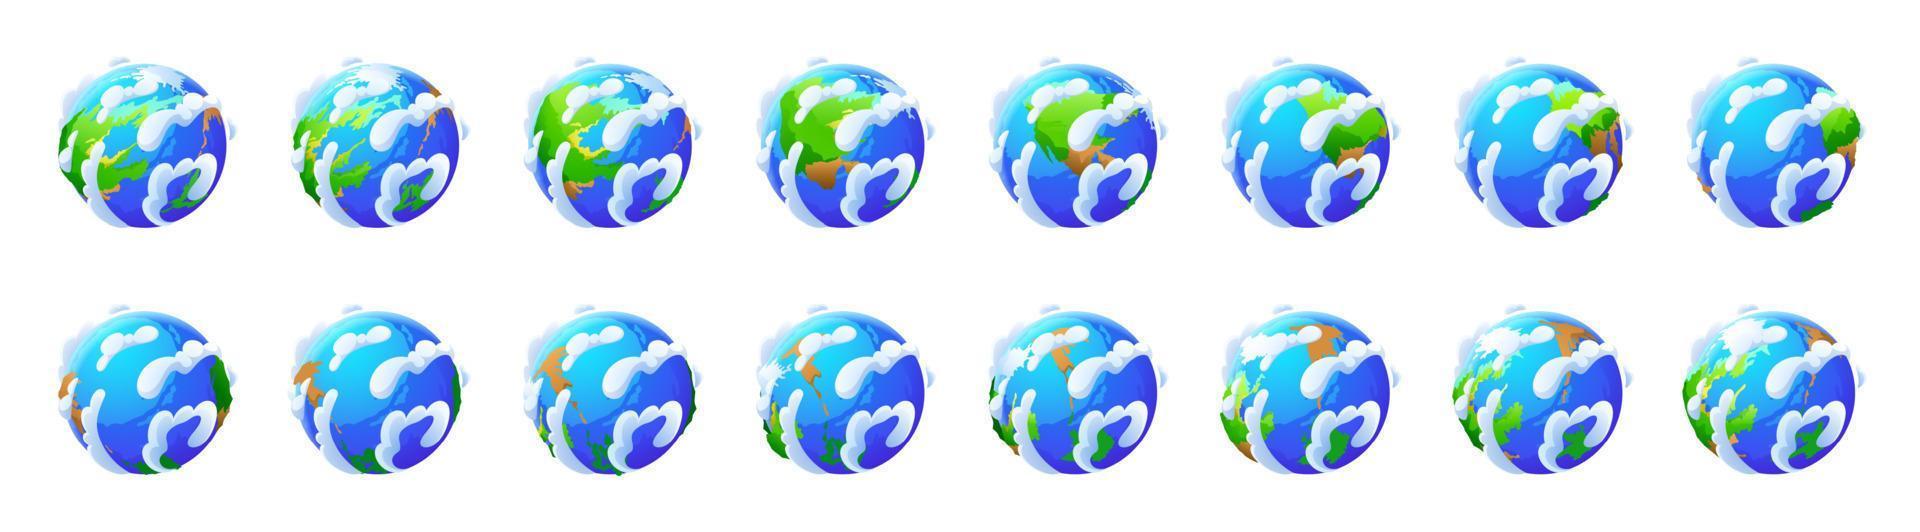 rotación del globo terrestre. iconos del mundo, planeta vector